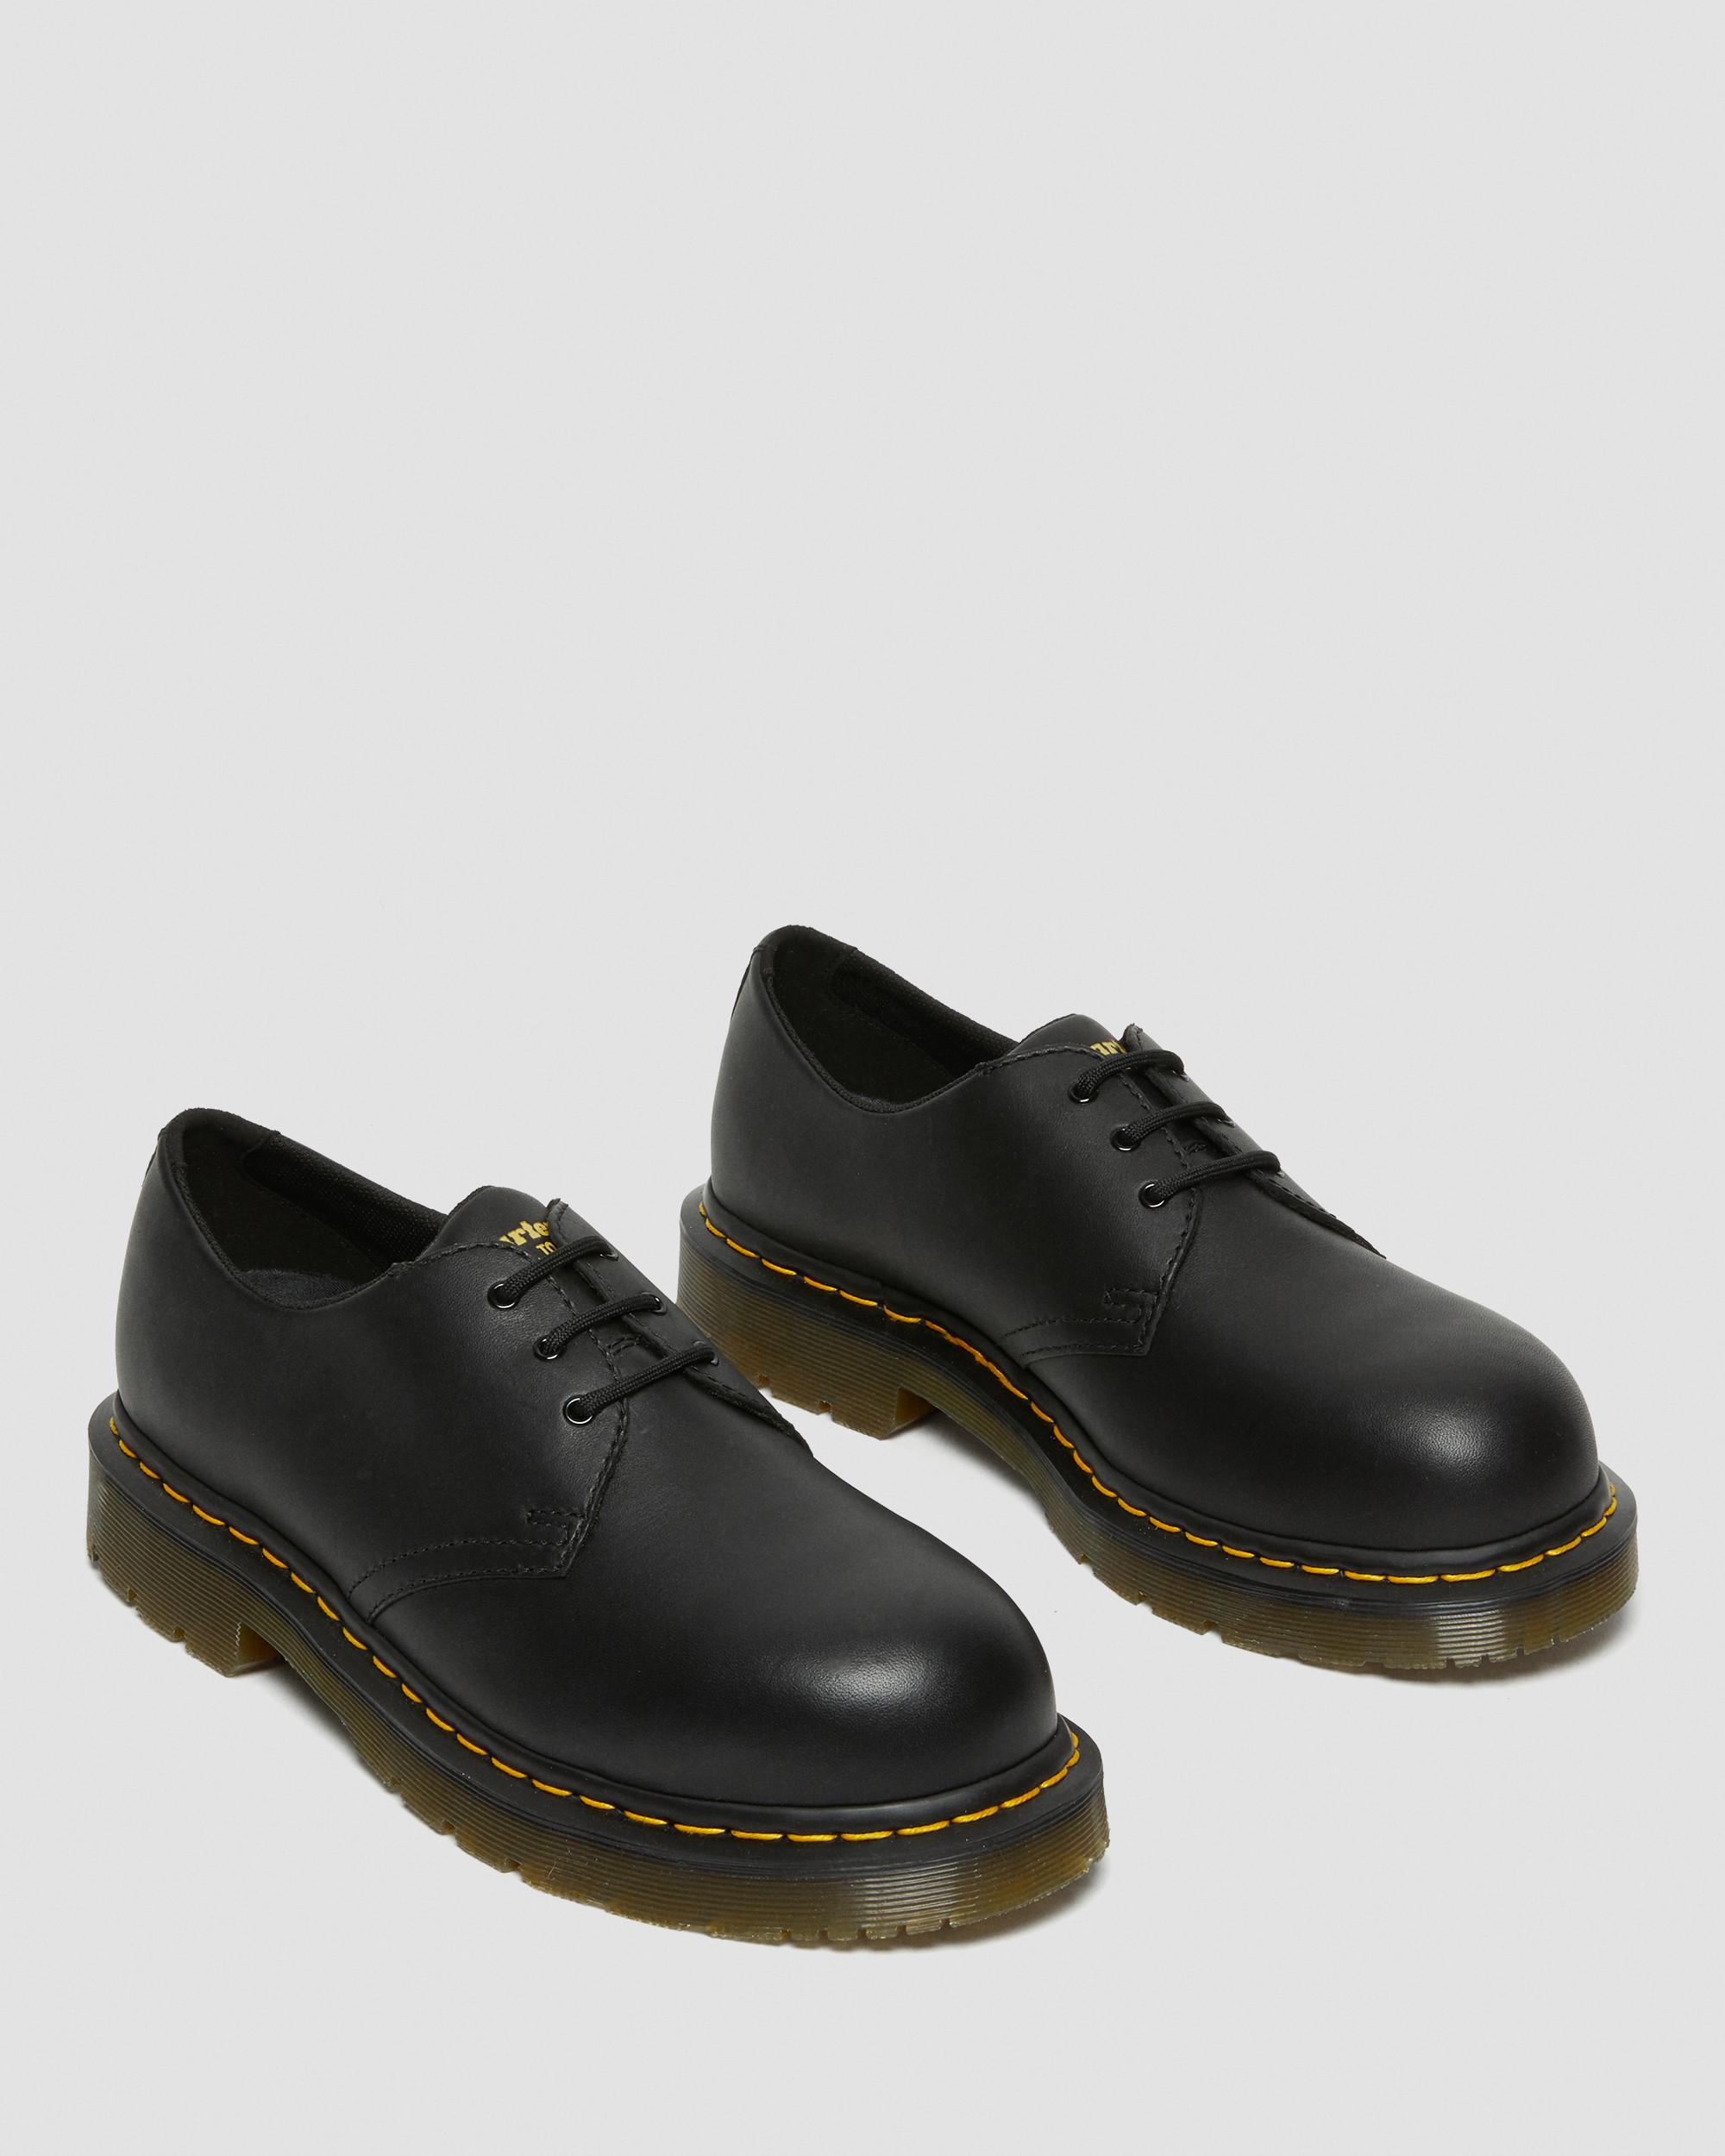 1461 Slip Resistant Steel Toe Shoes | Dr. Martens